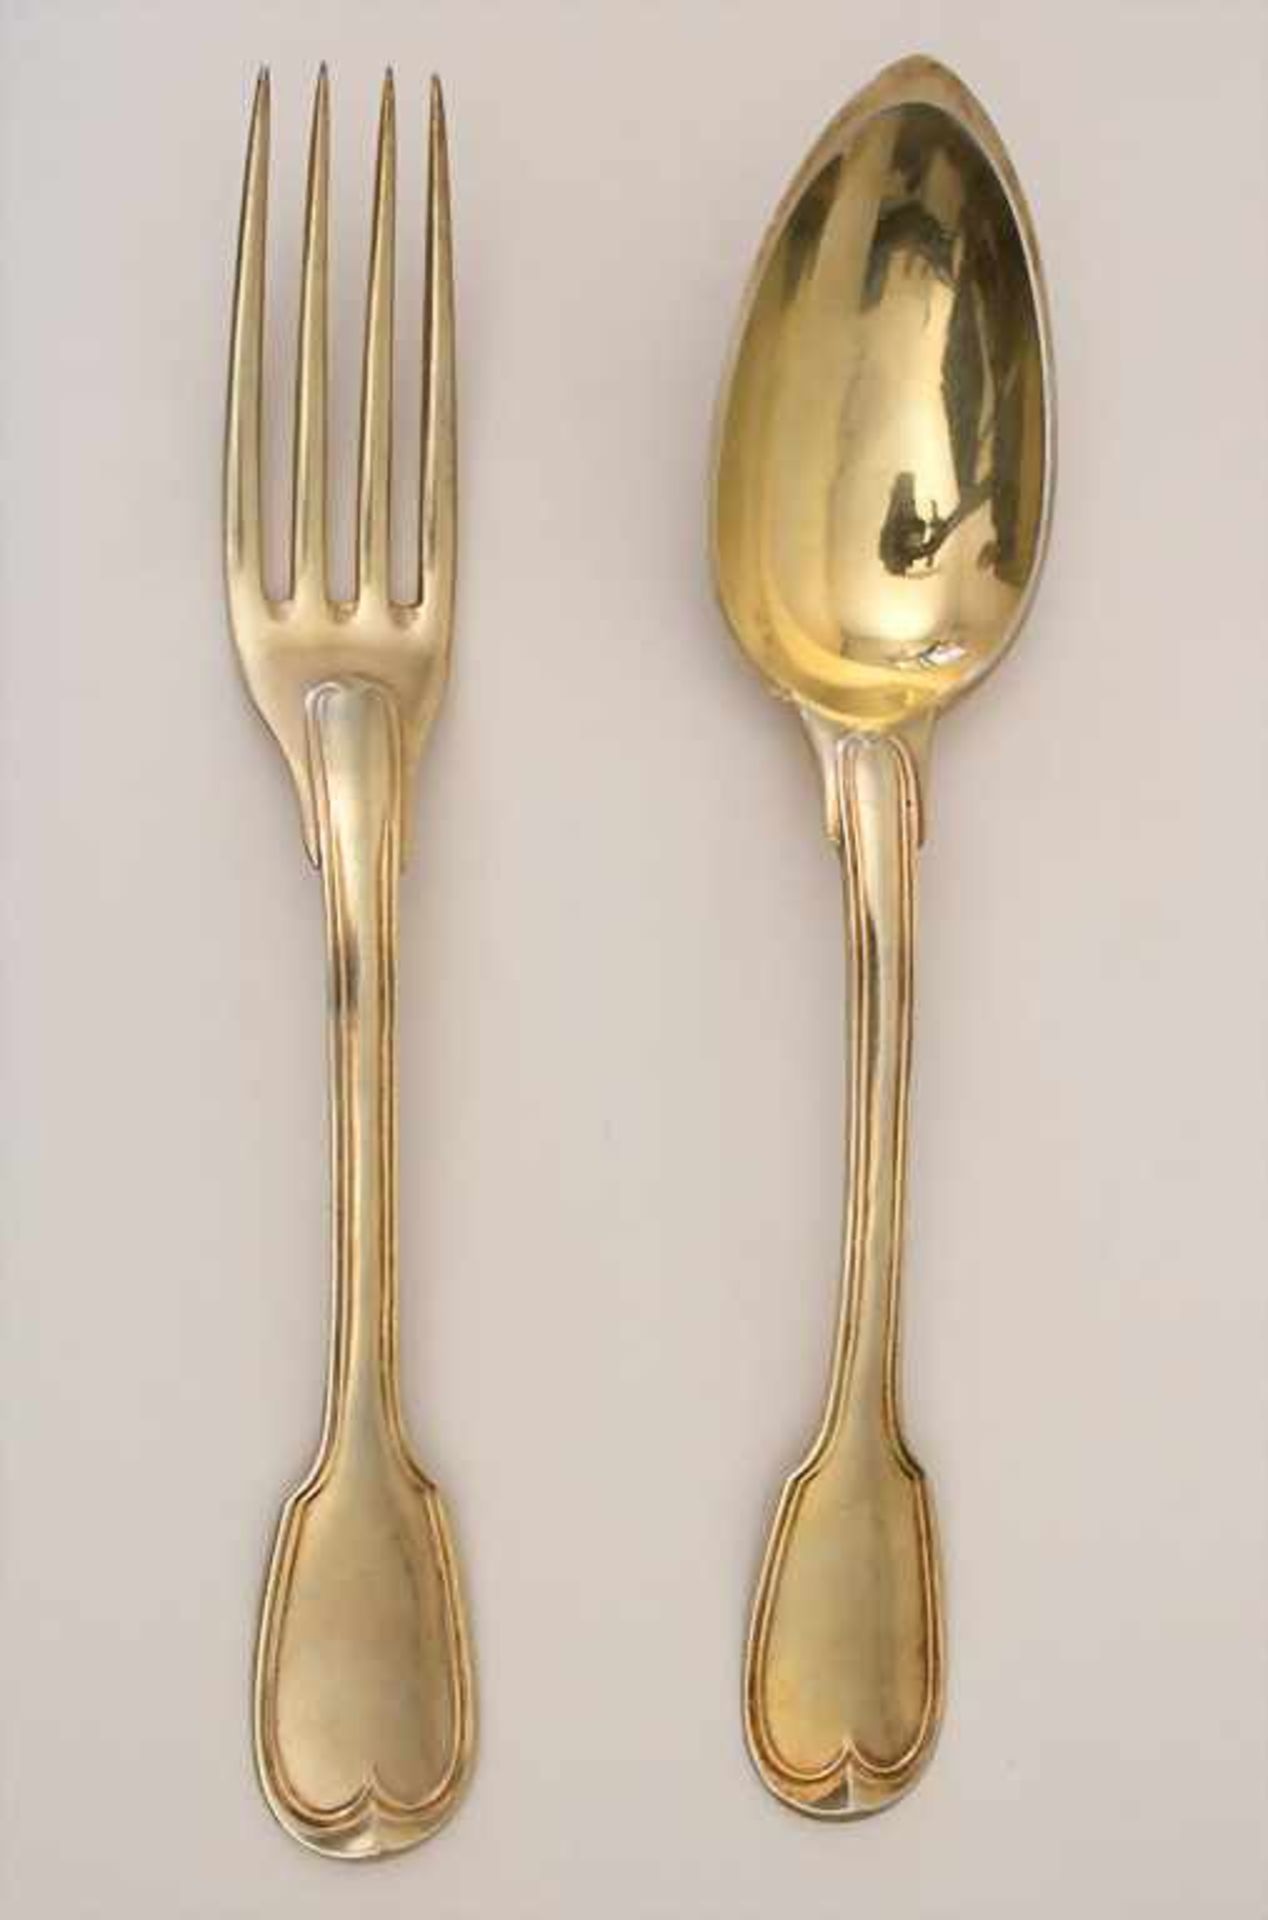 Silberbesteck für 6 Personen / 12 pieces of silver flatware, Paris, 1798-1809Material: Silber 950/ - Bild 3 aus 8